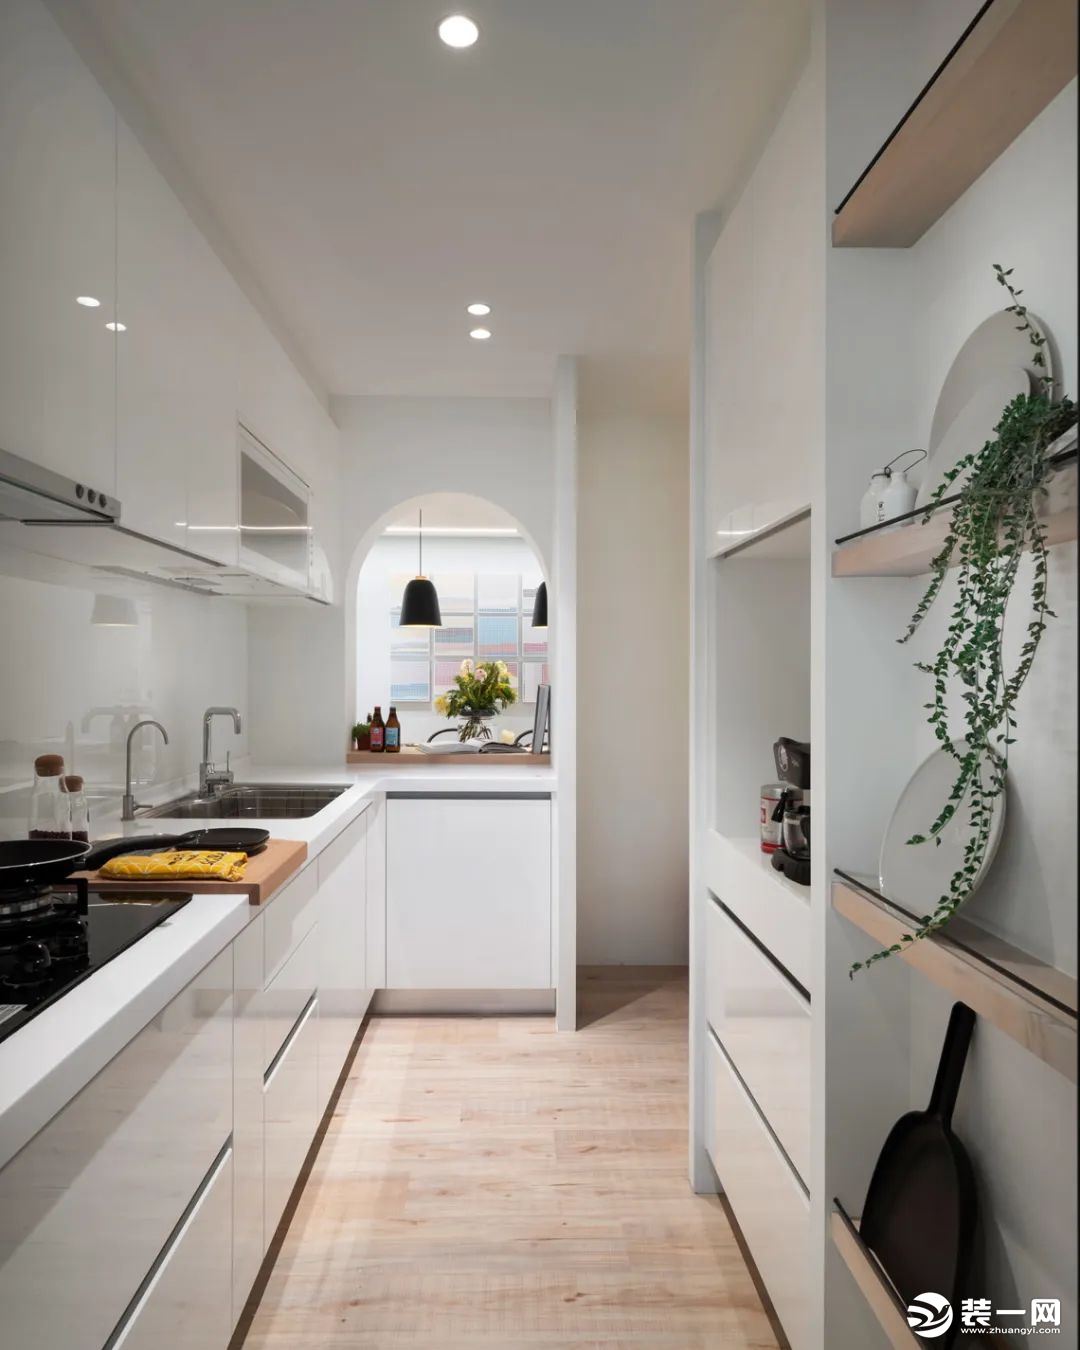 厨房整体白色的橱柜操作台，布置绿植装饰，让做饭氛围显得清新而自然；实用的收纳隔板架，让厨房也有方便的